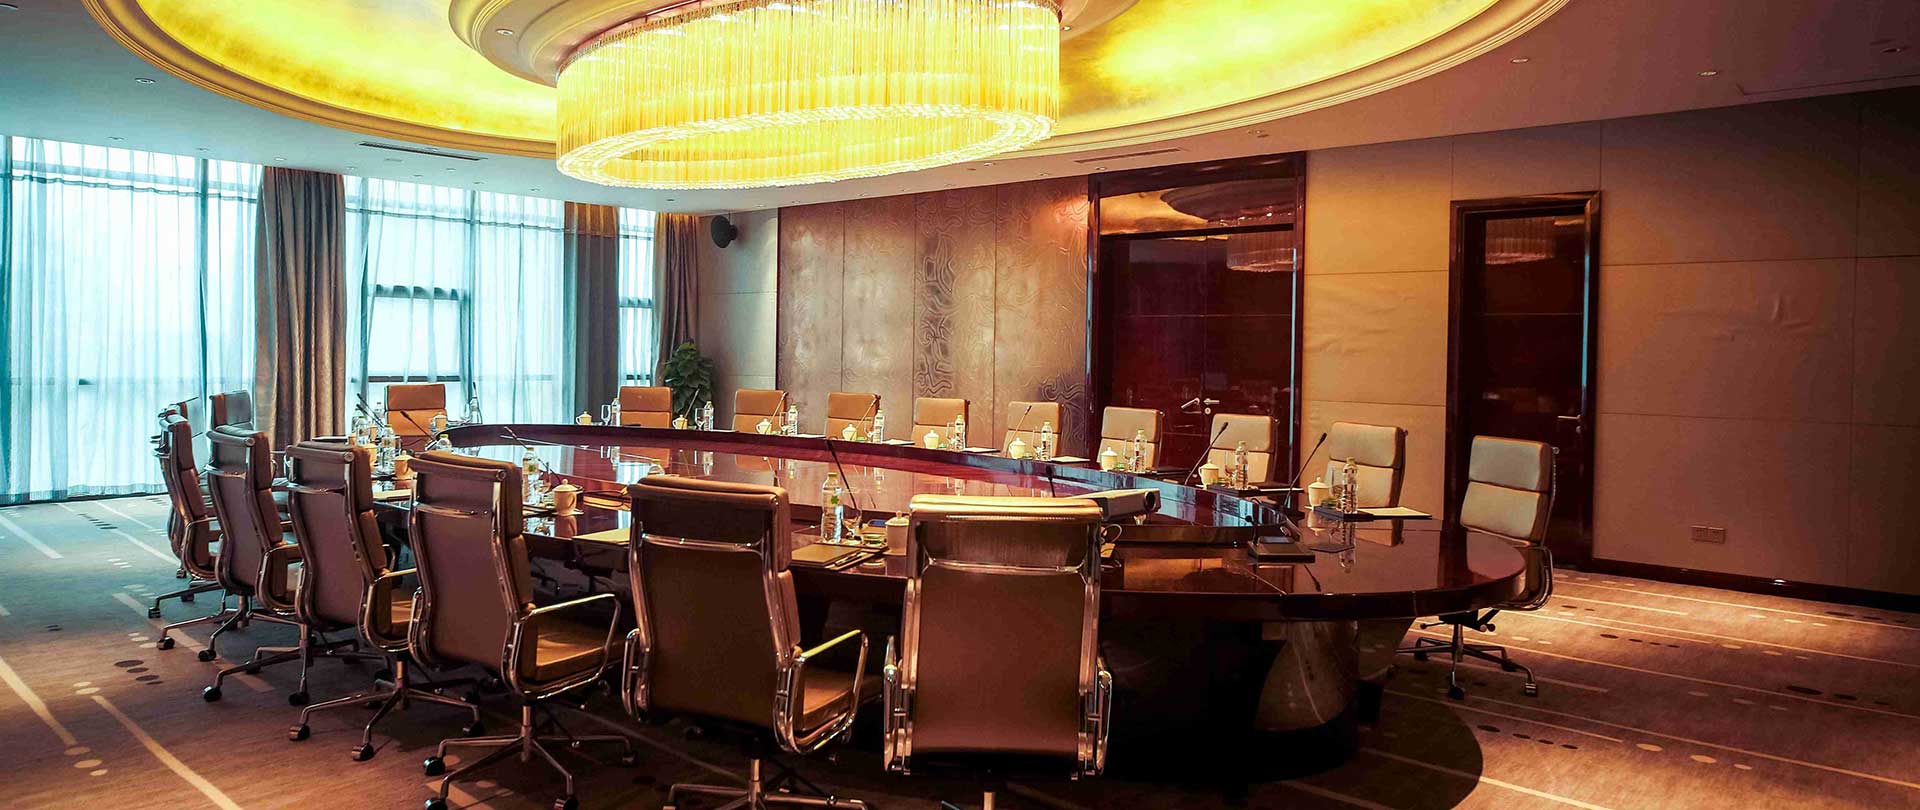 Worldhotel Grand Jiaxing Hunan Meeting Room, Changsha